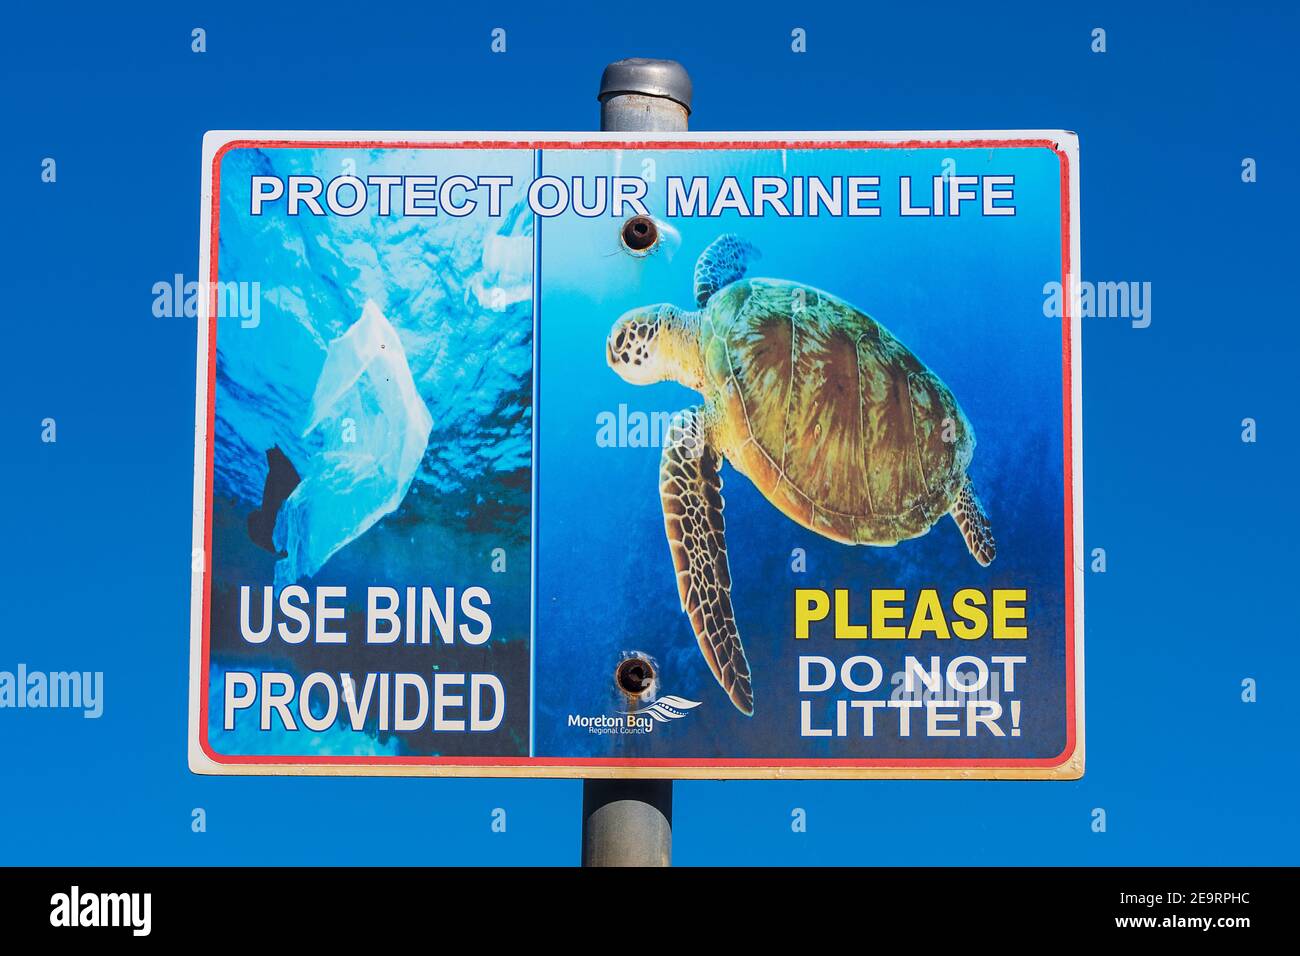 Protégez notre panneau de protection de la vie marine indiquant d'utiliser des bacs pour les sacs en plastique, Beachmere, Queensland, Queensland, Australie Banque D'Images